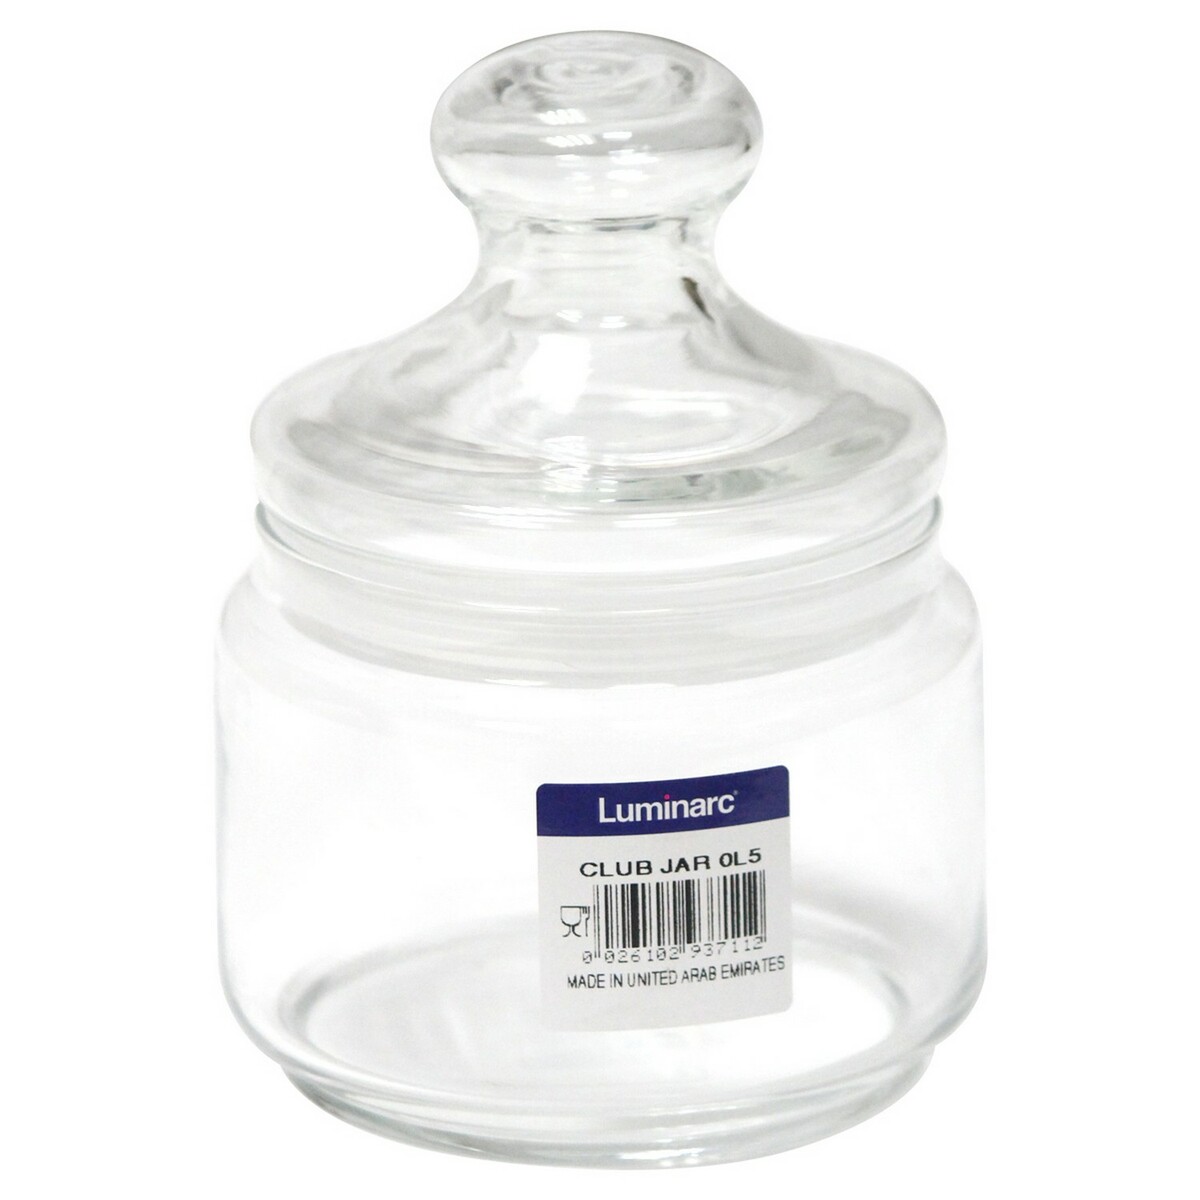 Luminarc Club Jar -500ml